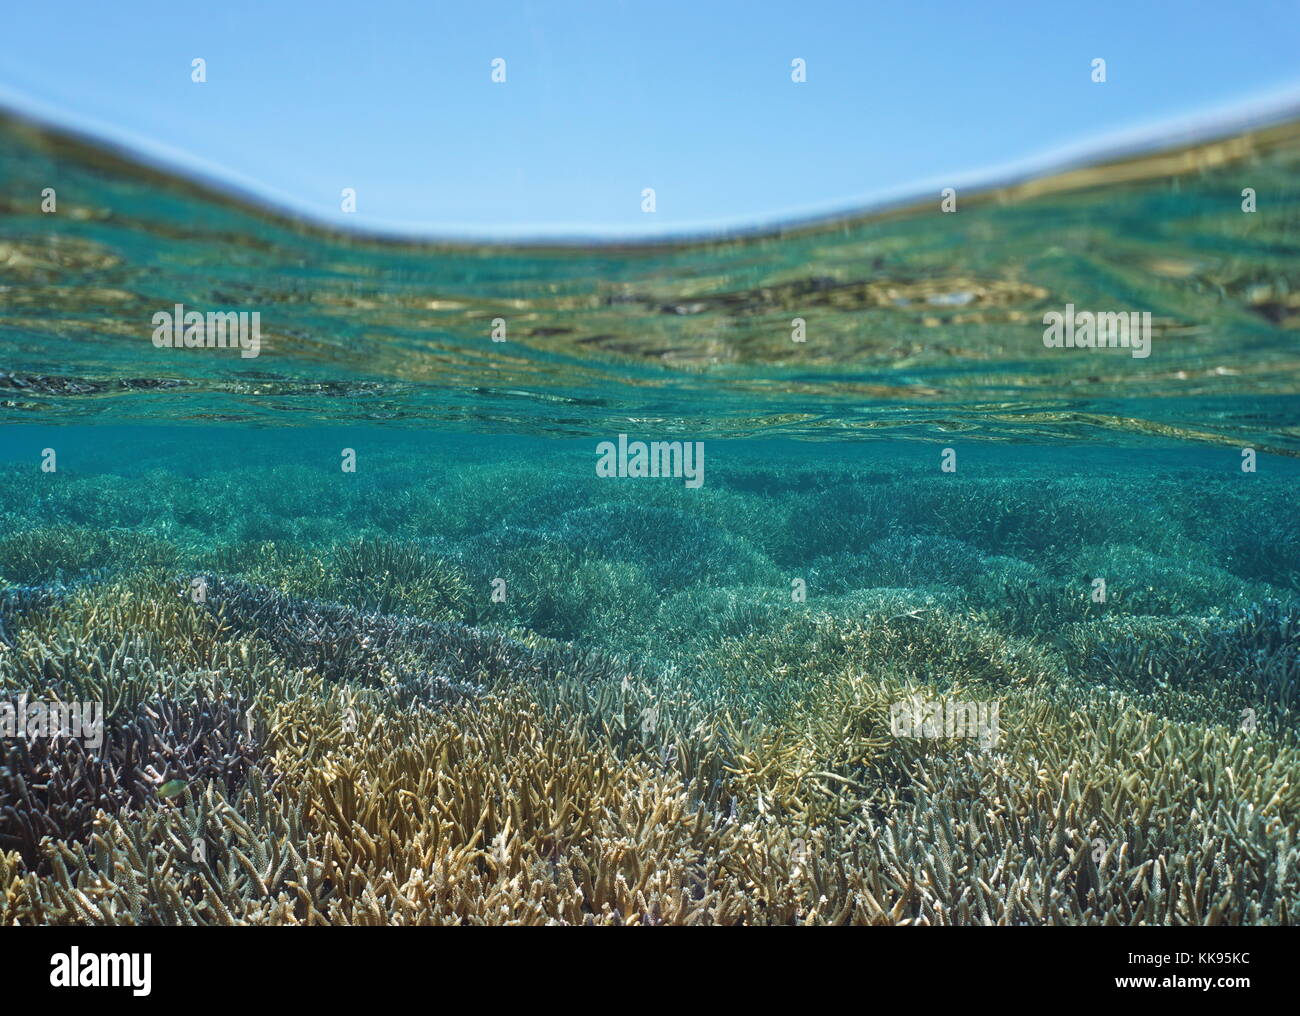 Fondali bassi coperti da Acropora staghorn coralli in buona salute sott'acqua e cielo blu al di sopra della superficie dell'acqua, Nuova Caledonia, oceano pacifico del sud Foto Stock